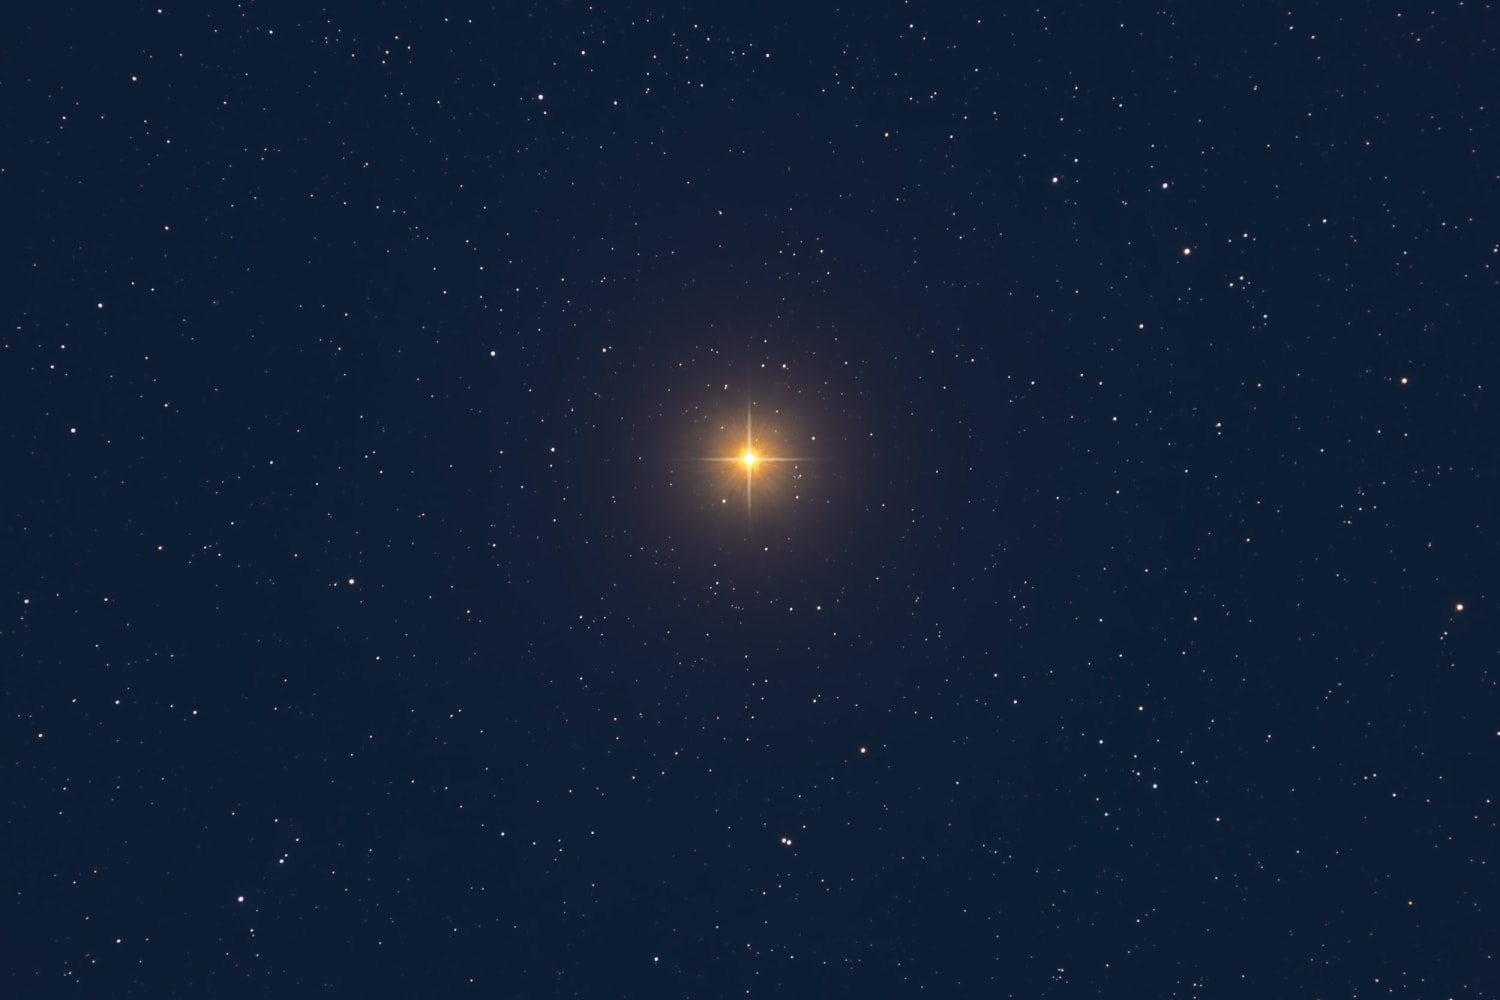 소행성은 밝은 별 베텔게우스 앞을 지나 수백만 명이 볼 수 있는 희귀한 일식을 일으킬 것입니다.